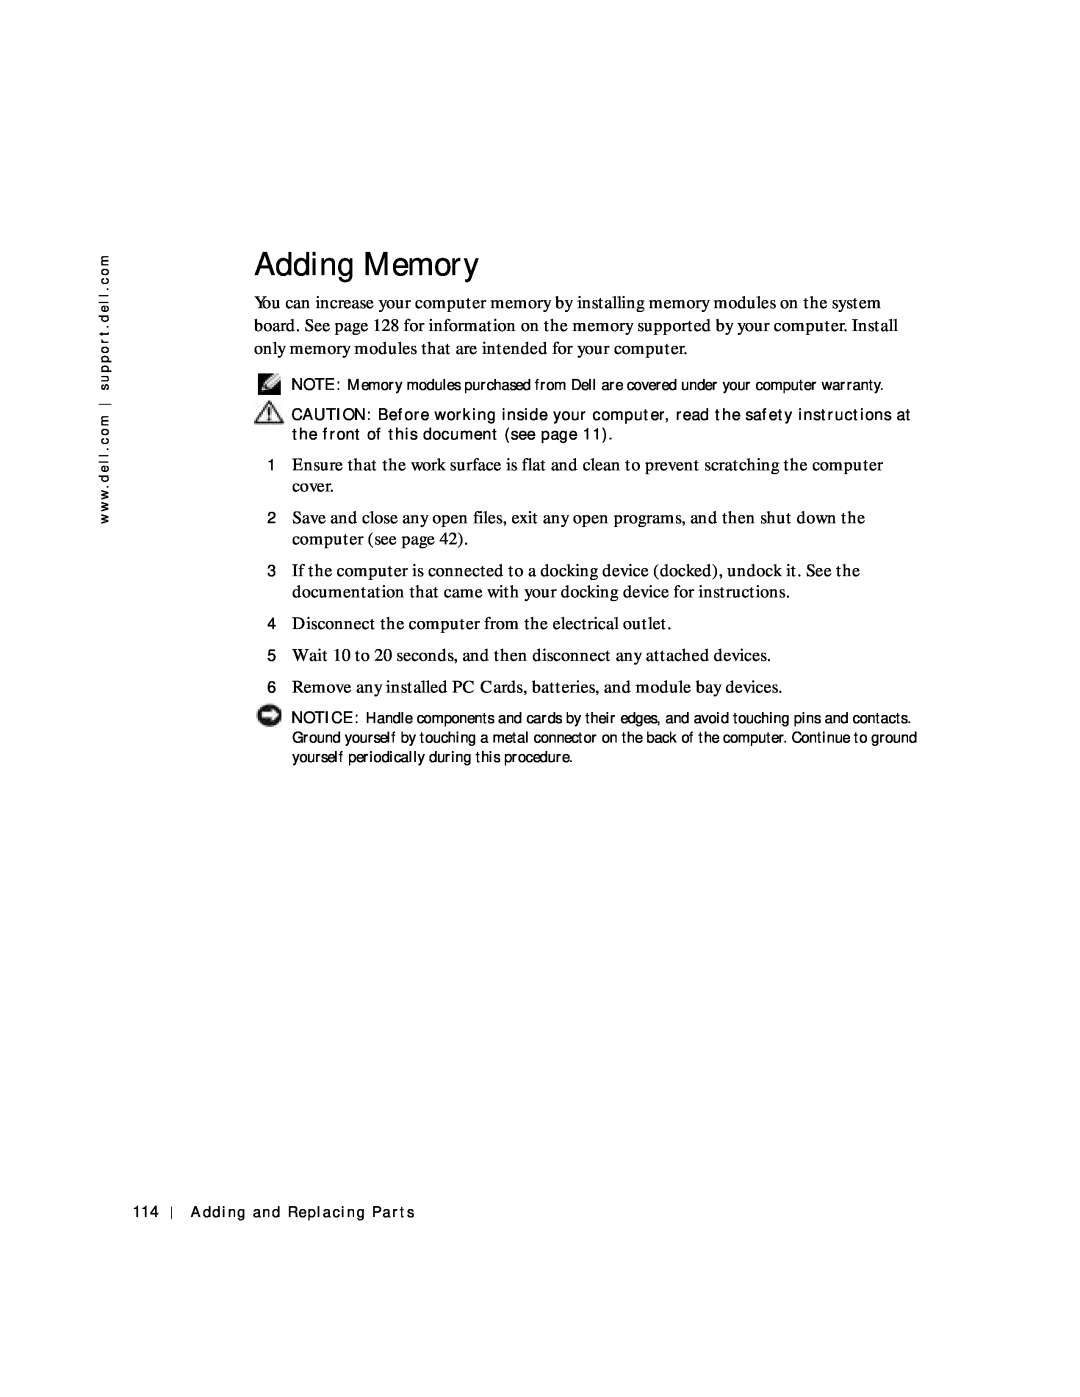 Dell 8600 manual Adding Memory 